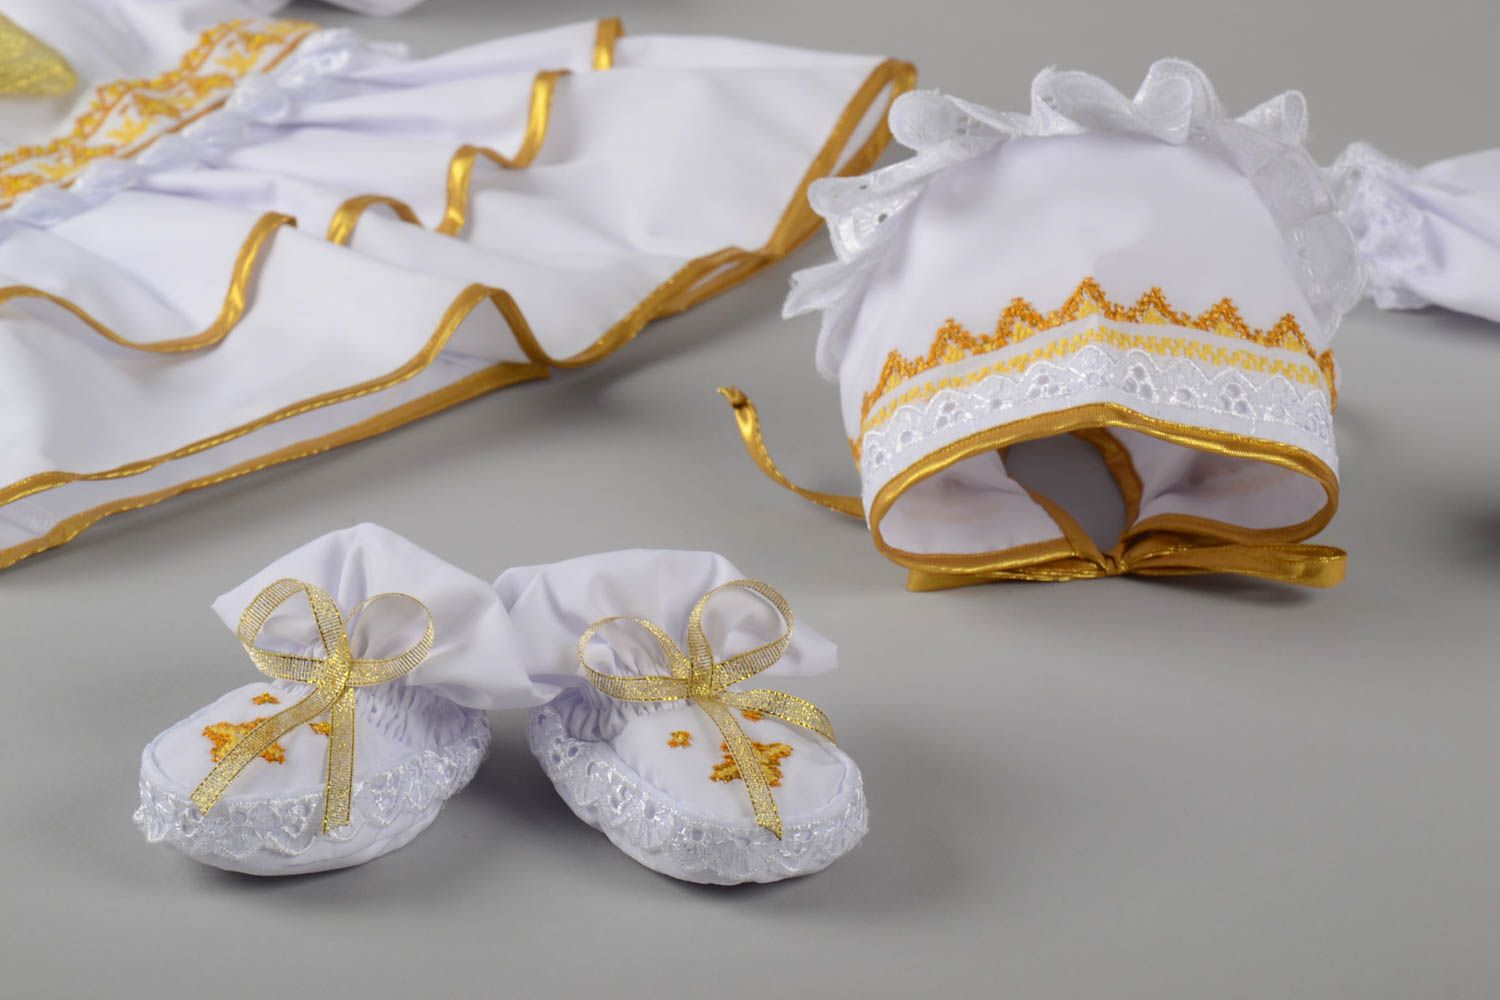 Handgefertigte Schuhe modisches Accessoire Designer Babymode nett und schön foto 3